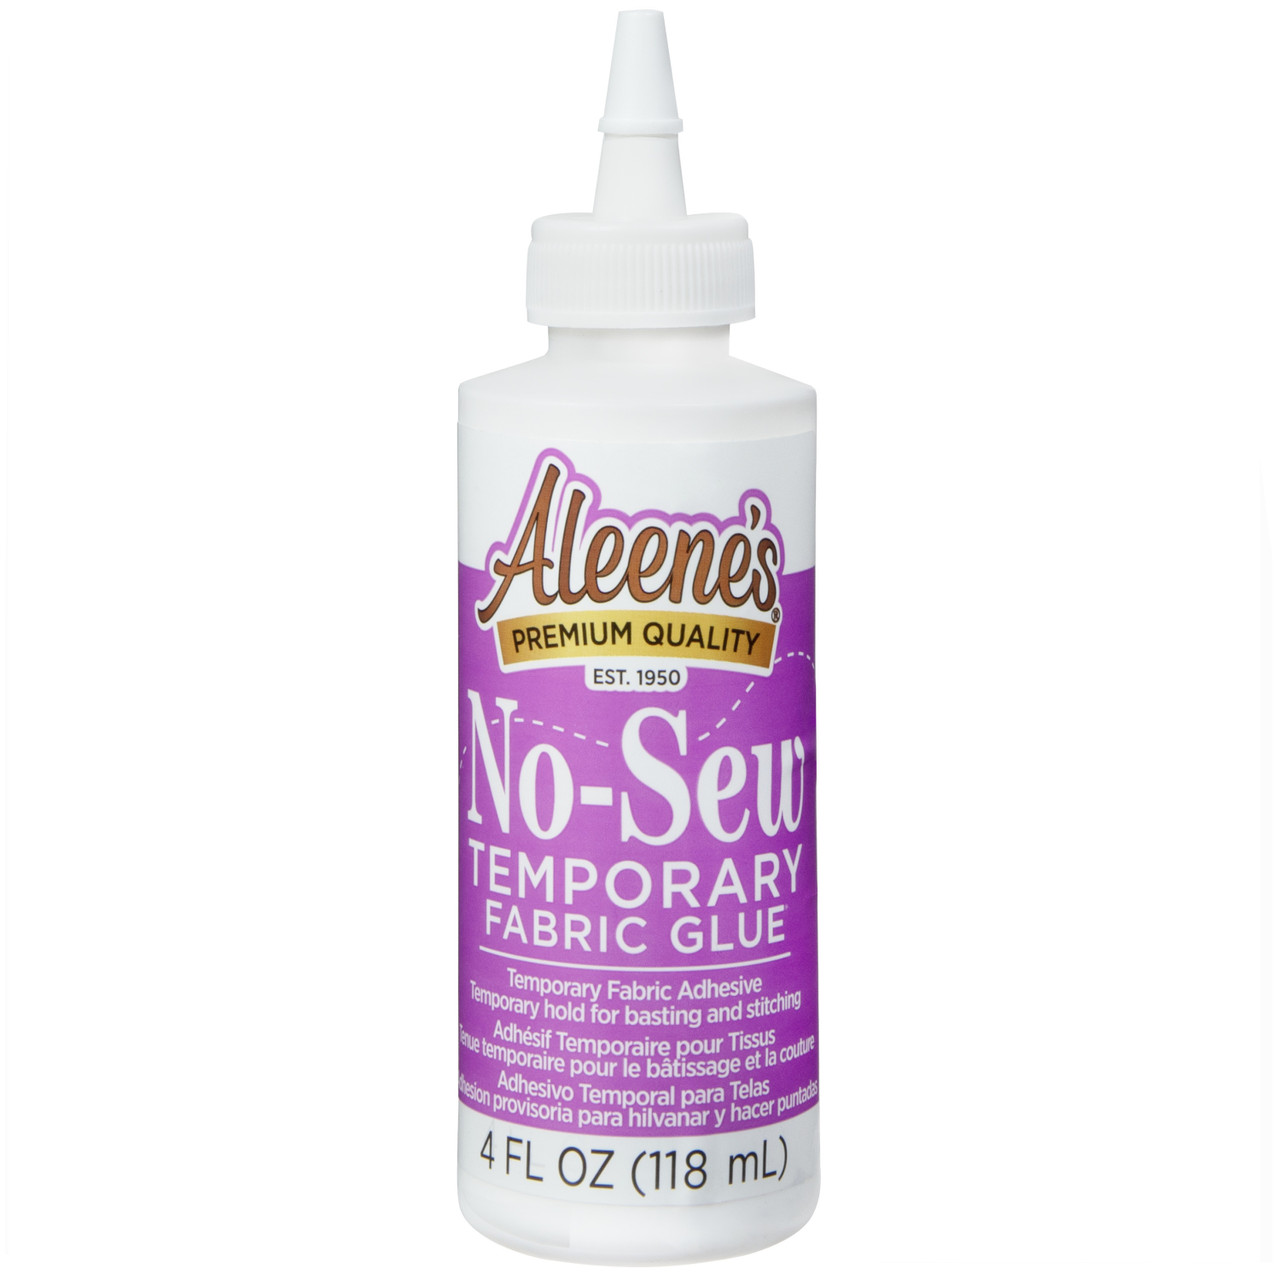 Aleene’s Wood Glue 4 fl. oz. 3 Pack